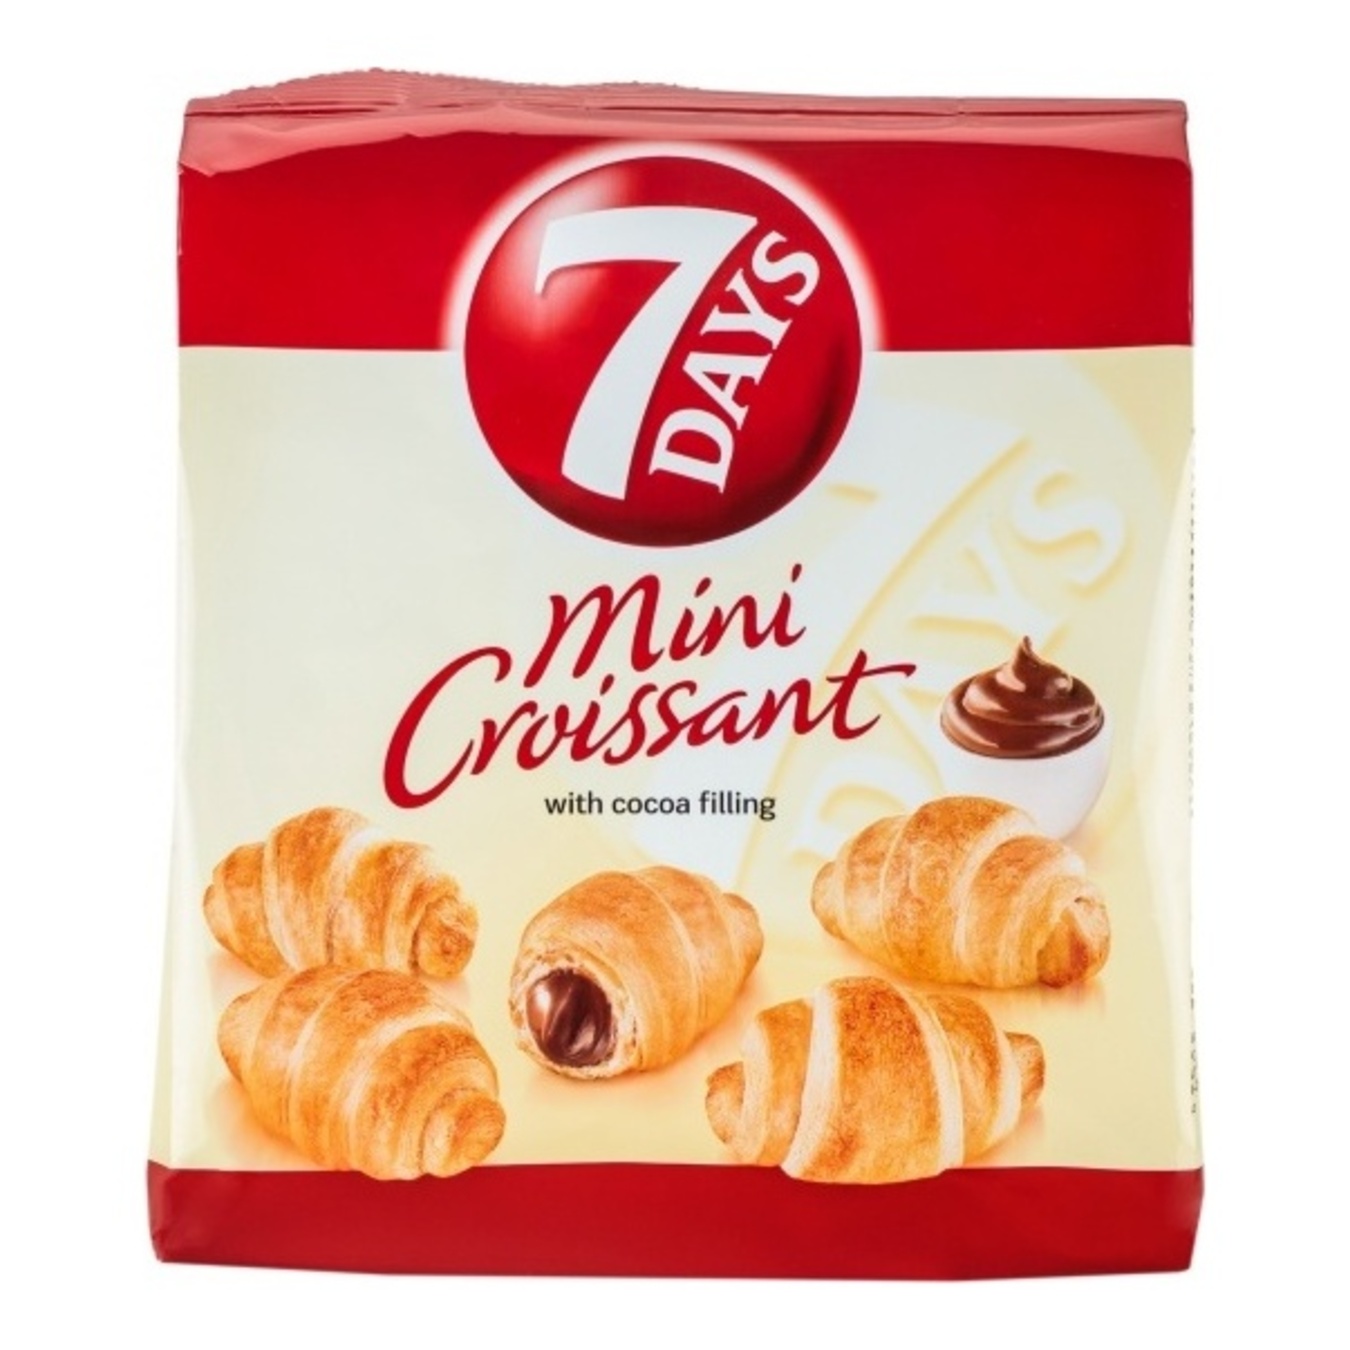 7DAYS Cocoa Cream Mini Croissant
185g